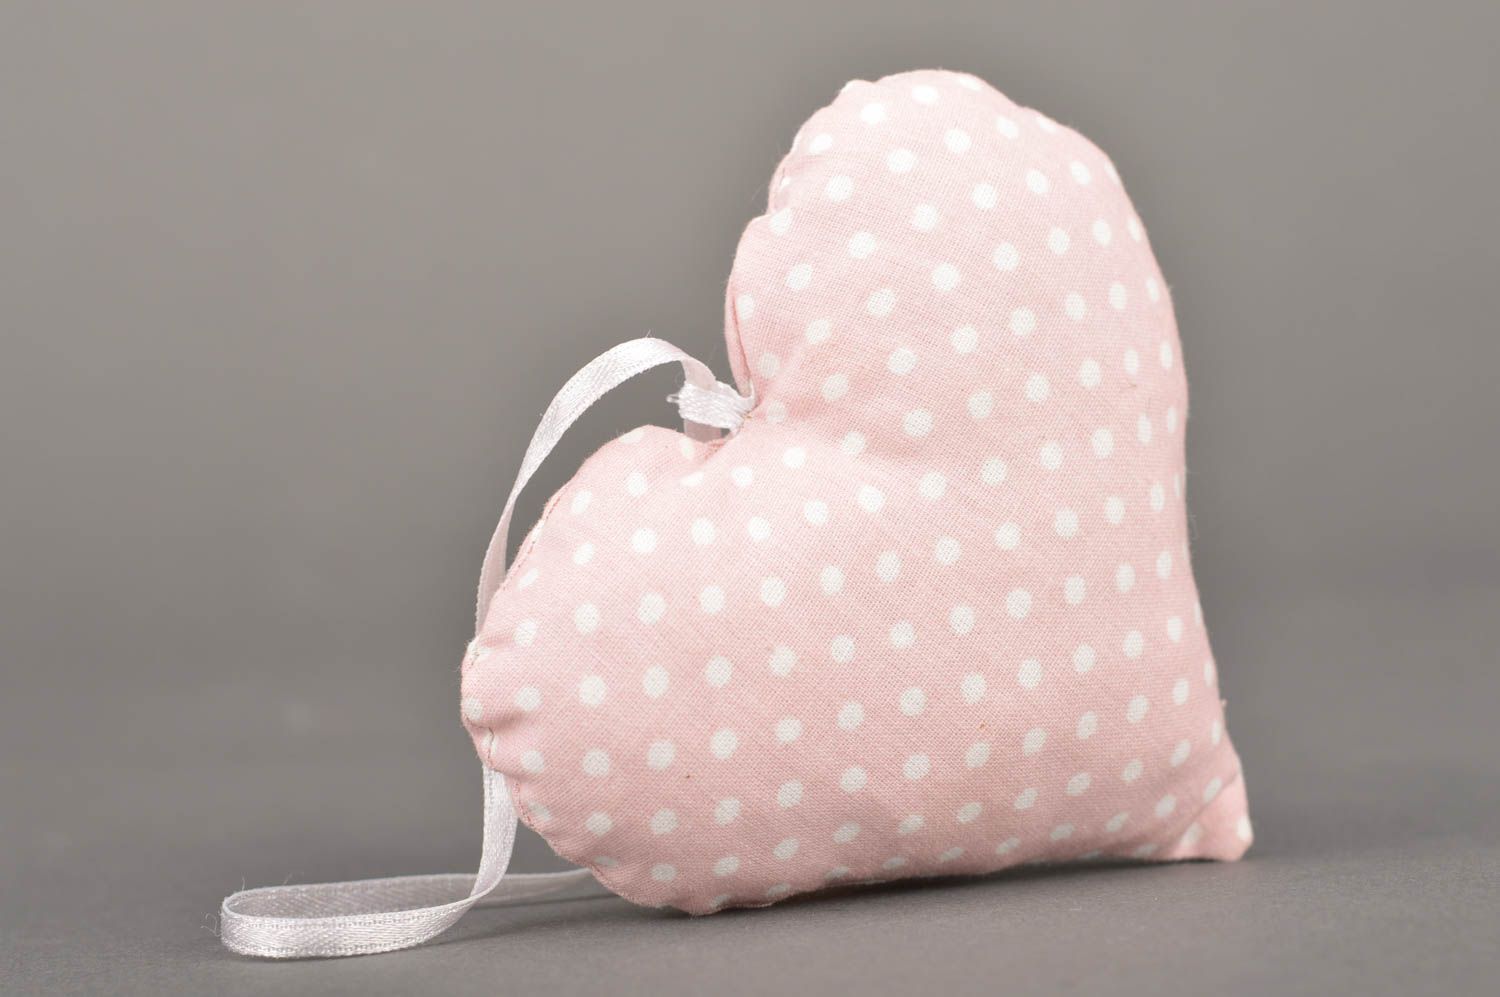 Интерьерная подвеска сердце розовое в горошек из хлопка красивая ручной работы фото 5